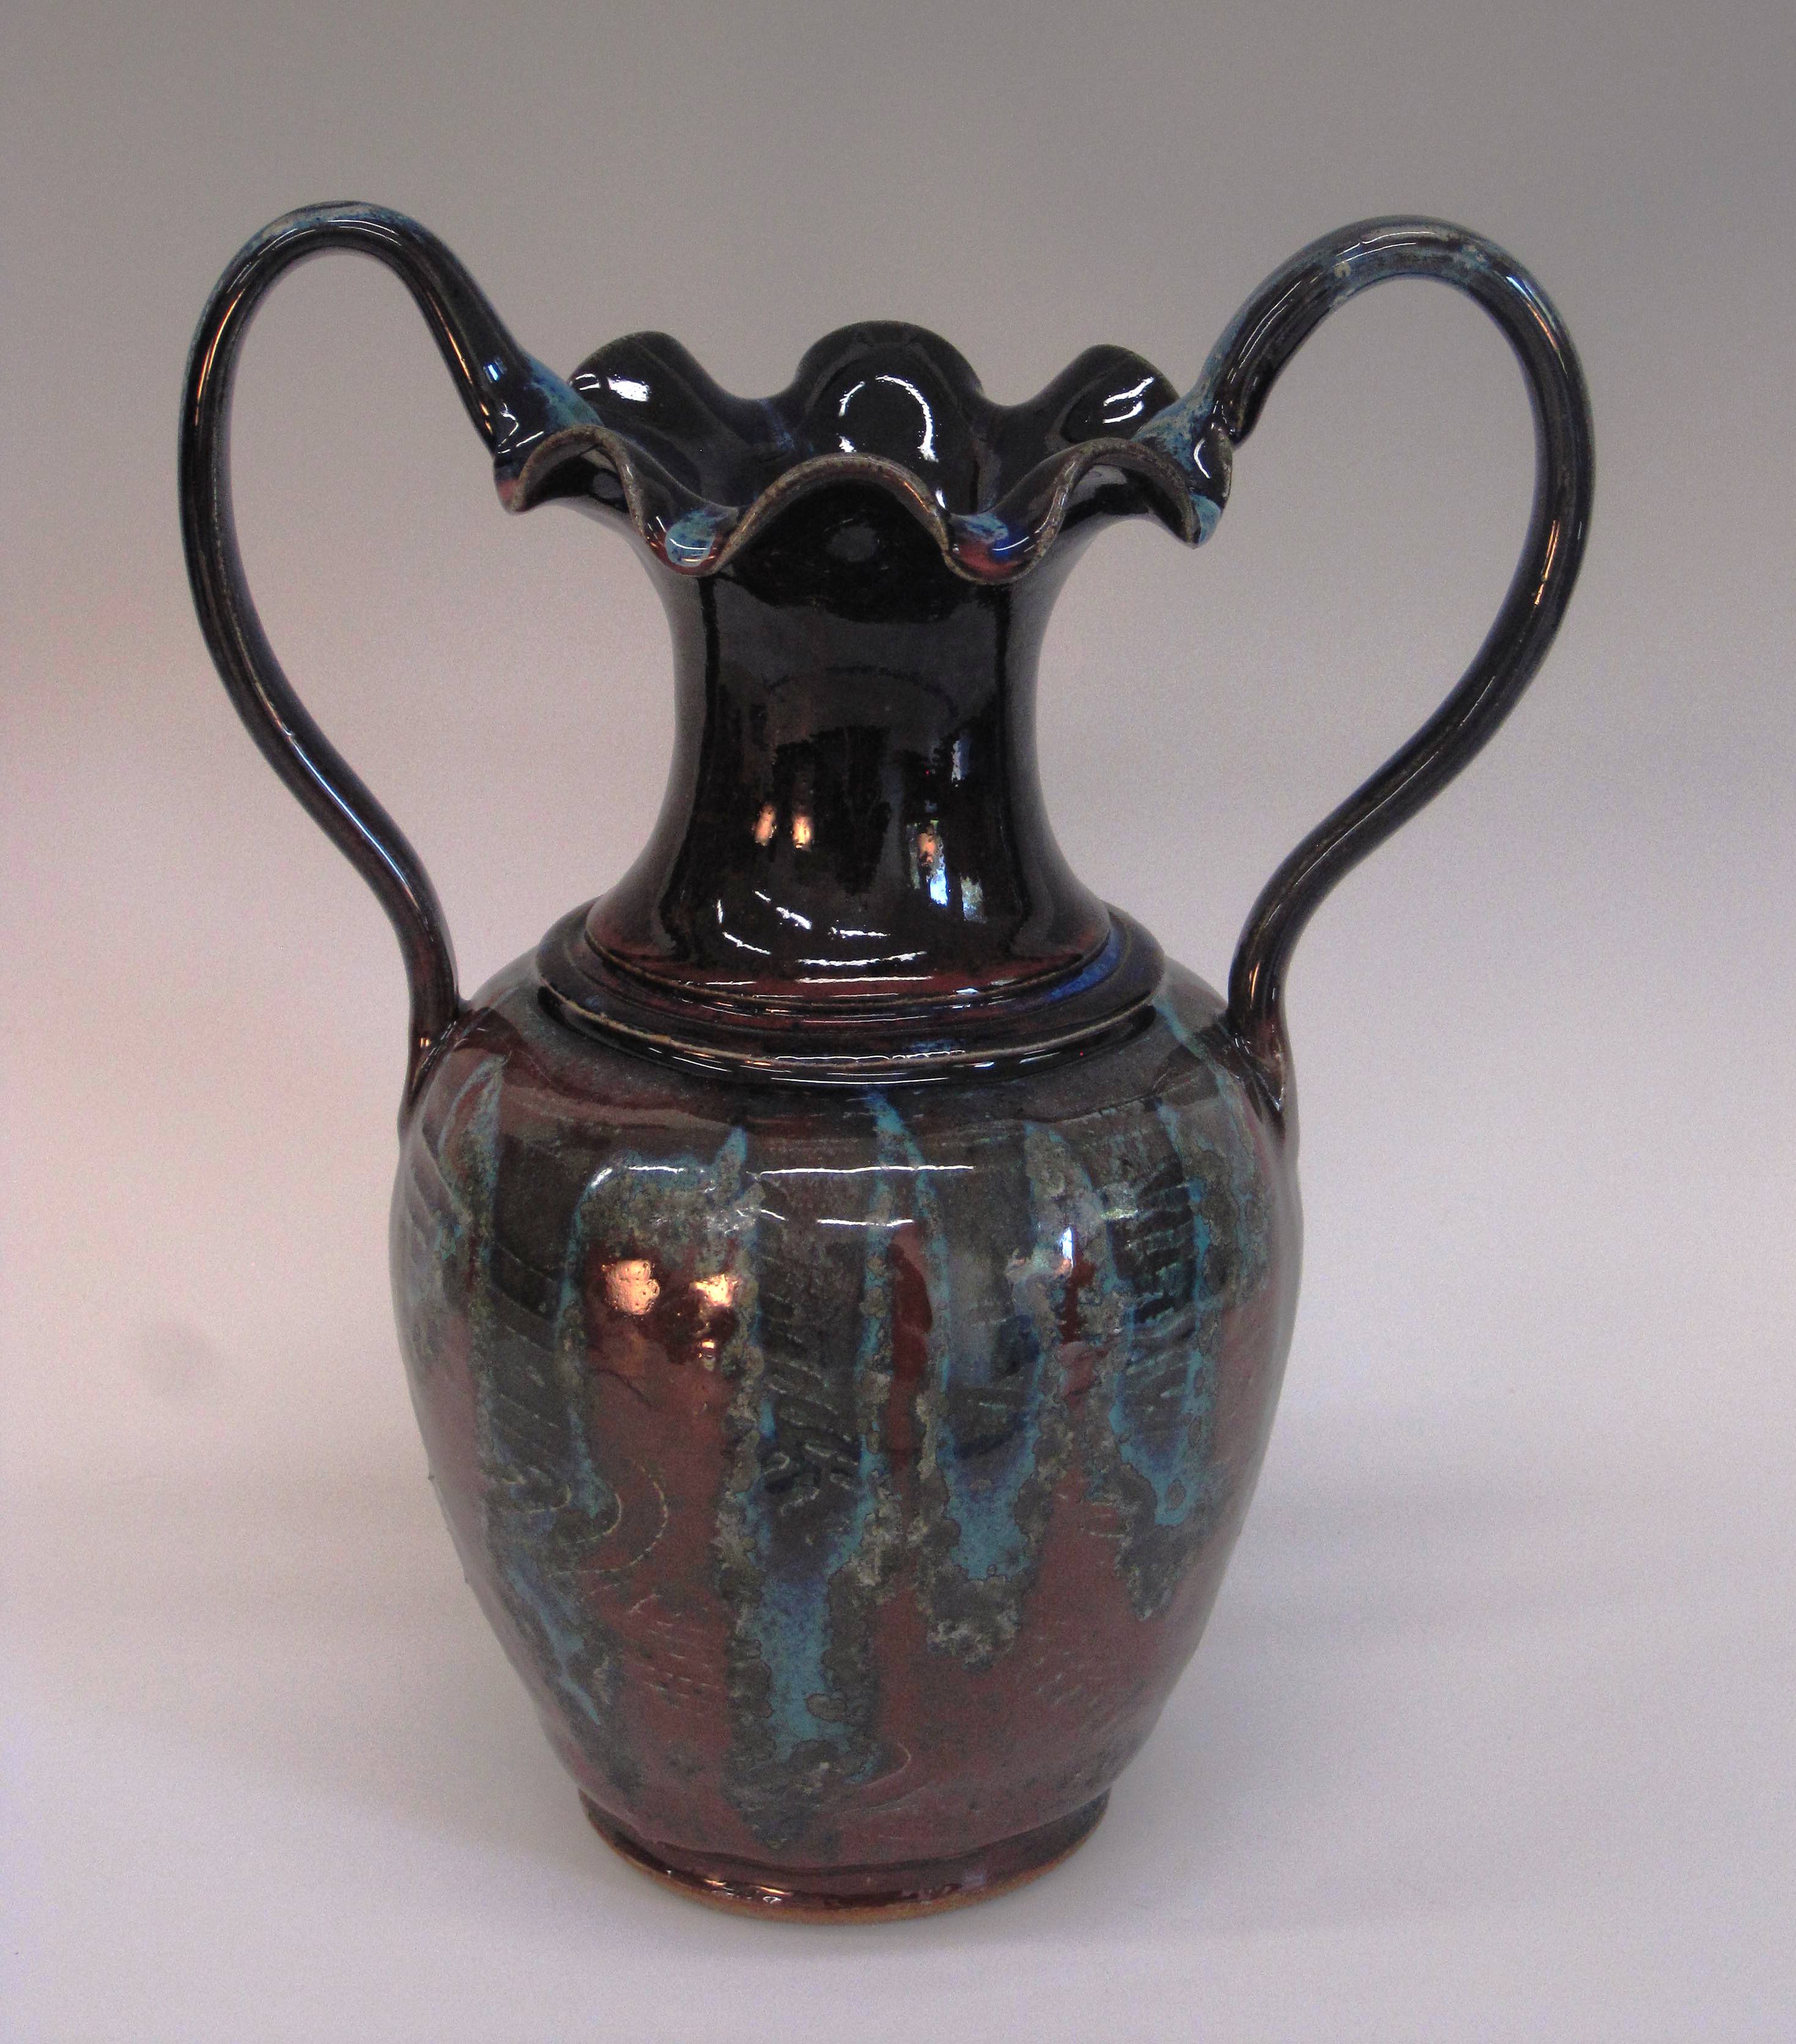 11" x 9" Vase Item # 251 $145